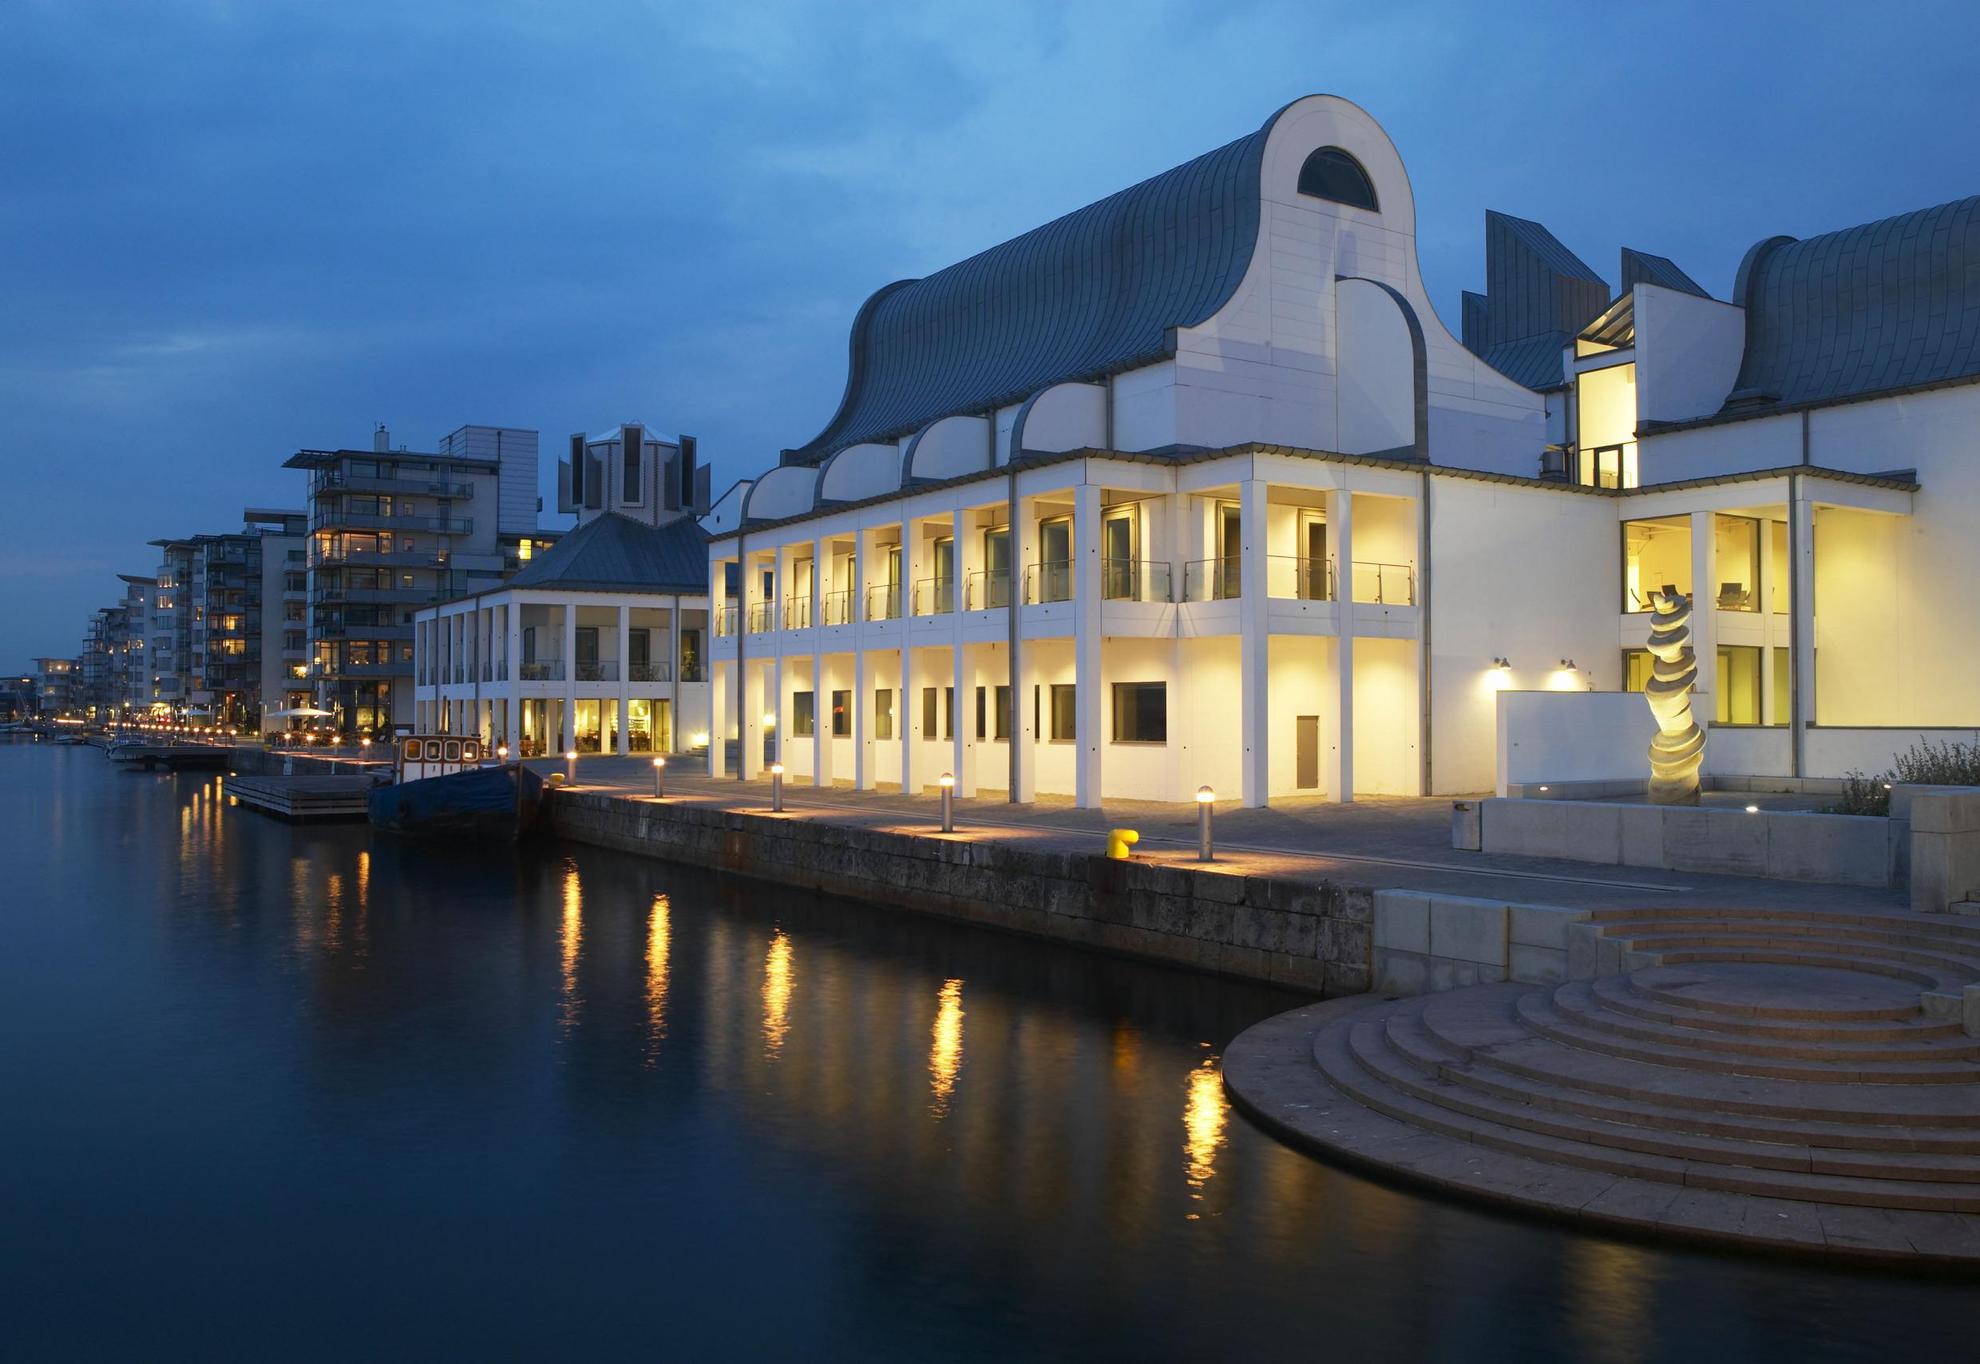 Dunkers Kulturzentrum im Abendlicht und mit Lampen an der Vorderseite, direkt am Meer an einem Jachthafen gelegen. Im Hintergrund siehst du Gebäude und Boote am Ufer.